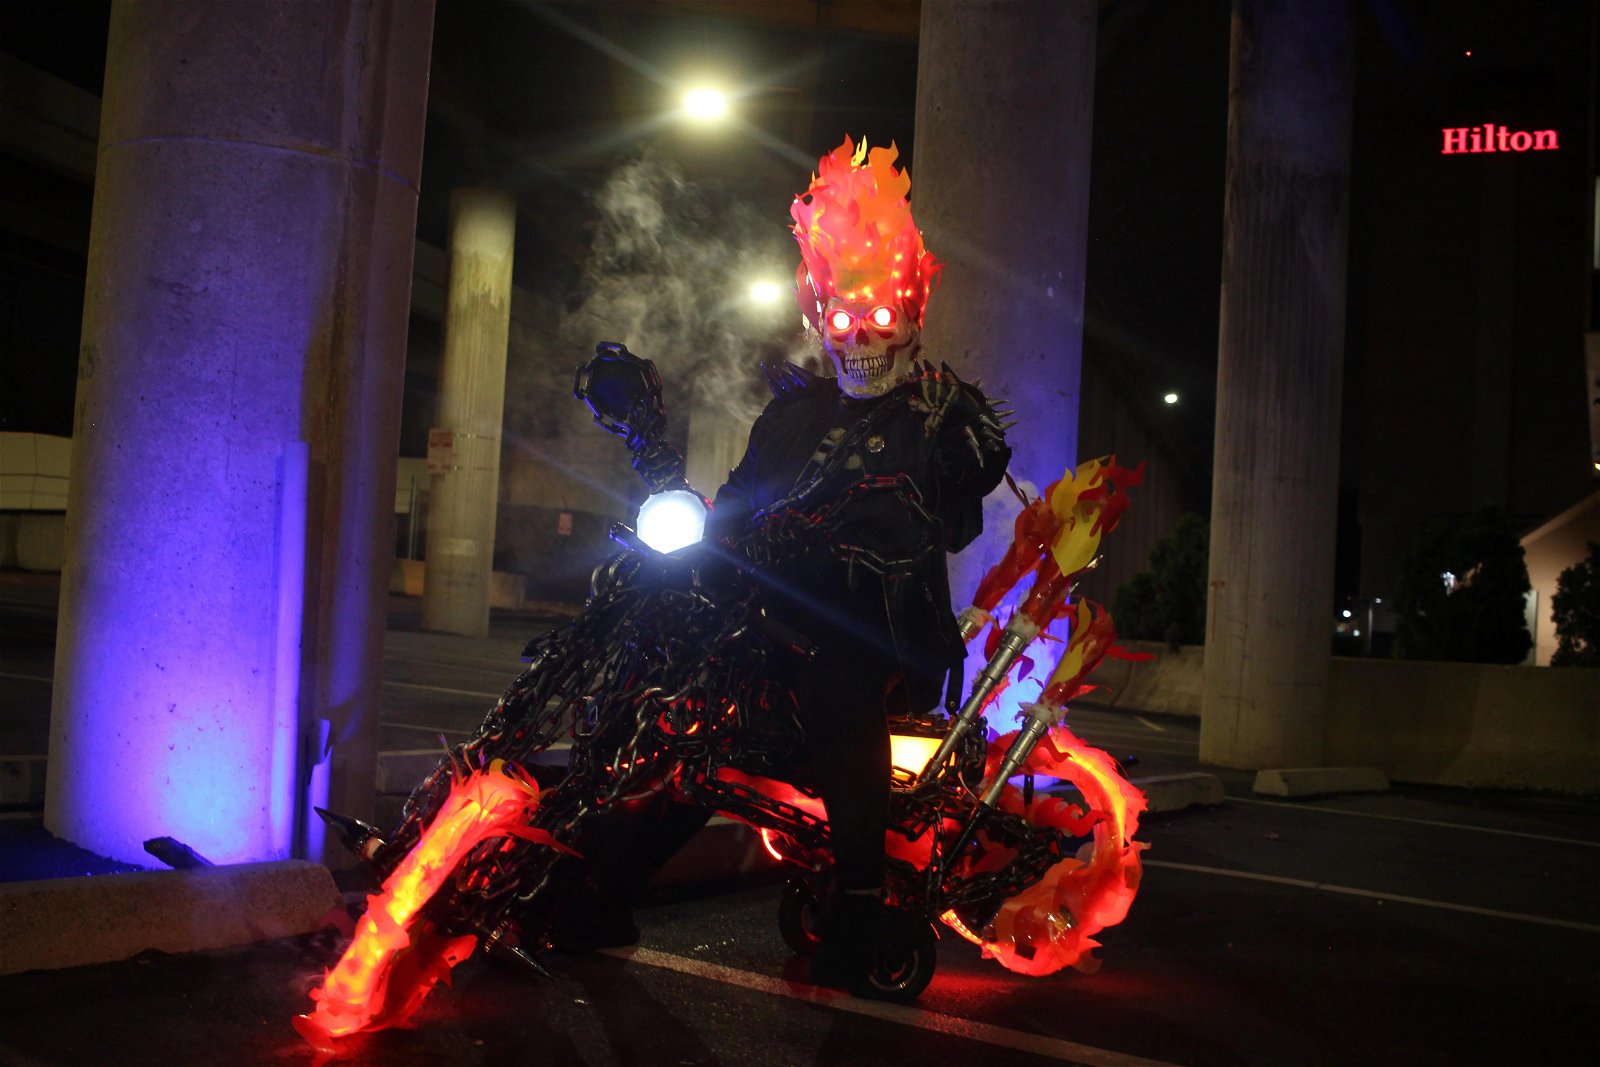 Un increíble cosplay muestra a Ghost Rider como el personaje más aterrador de Marvel